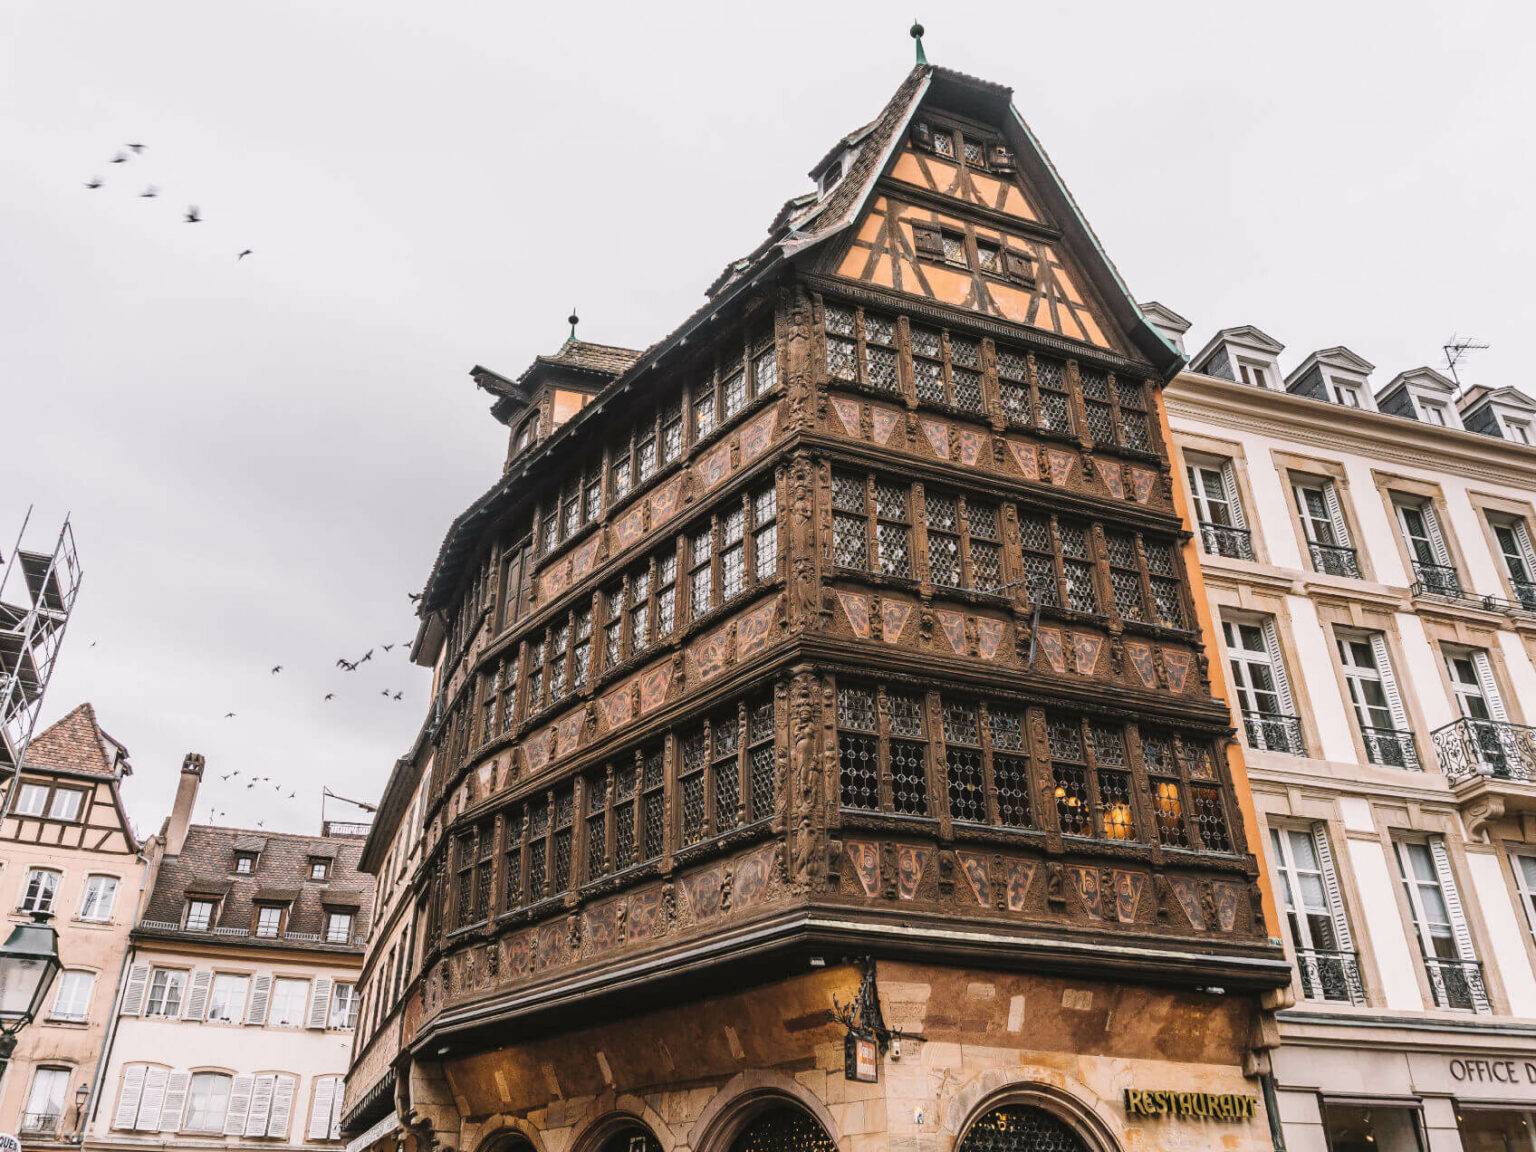 Das Haus Kammerzell beeindruckt mit einer schönen, kunstvollen Häuserfassade. in Straßburg.